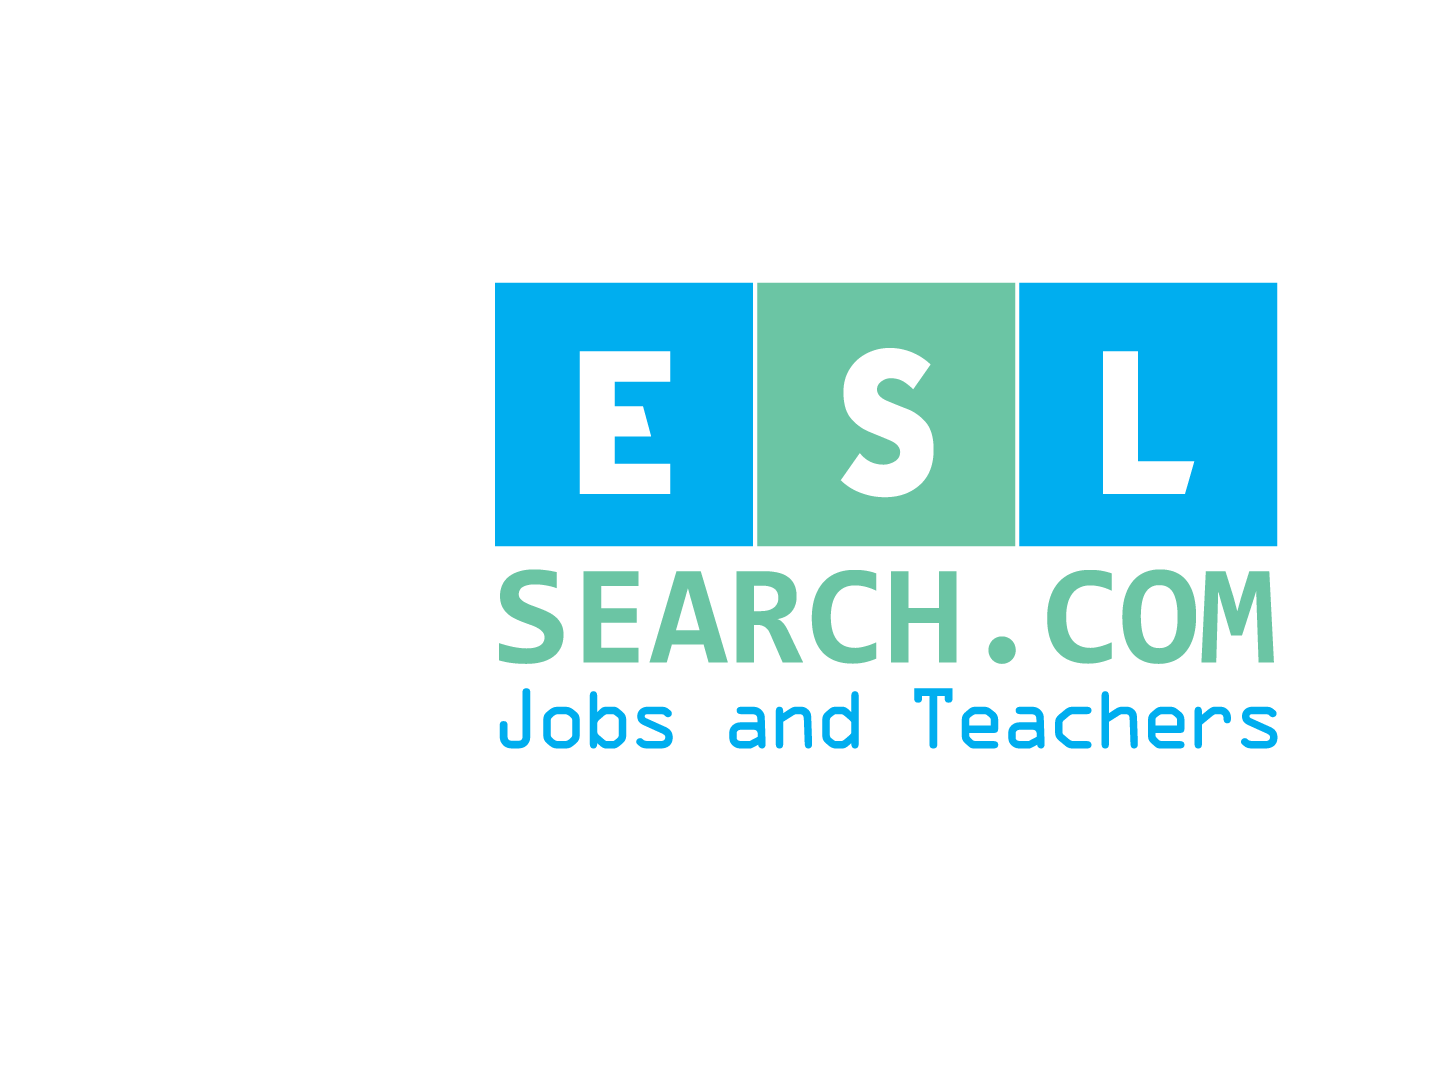 ESLsearch.com